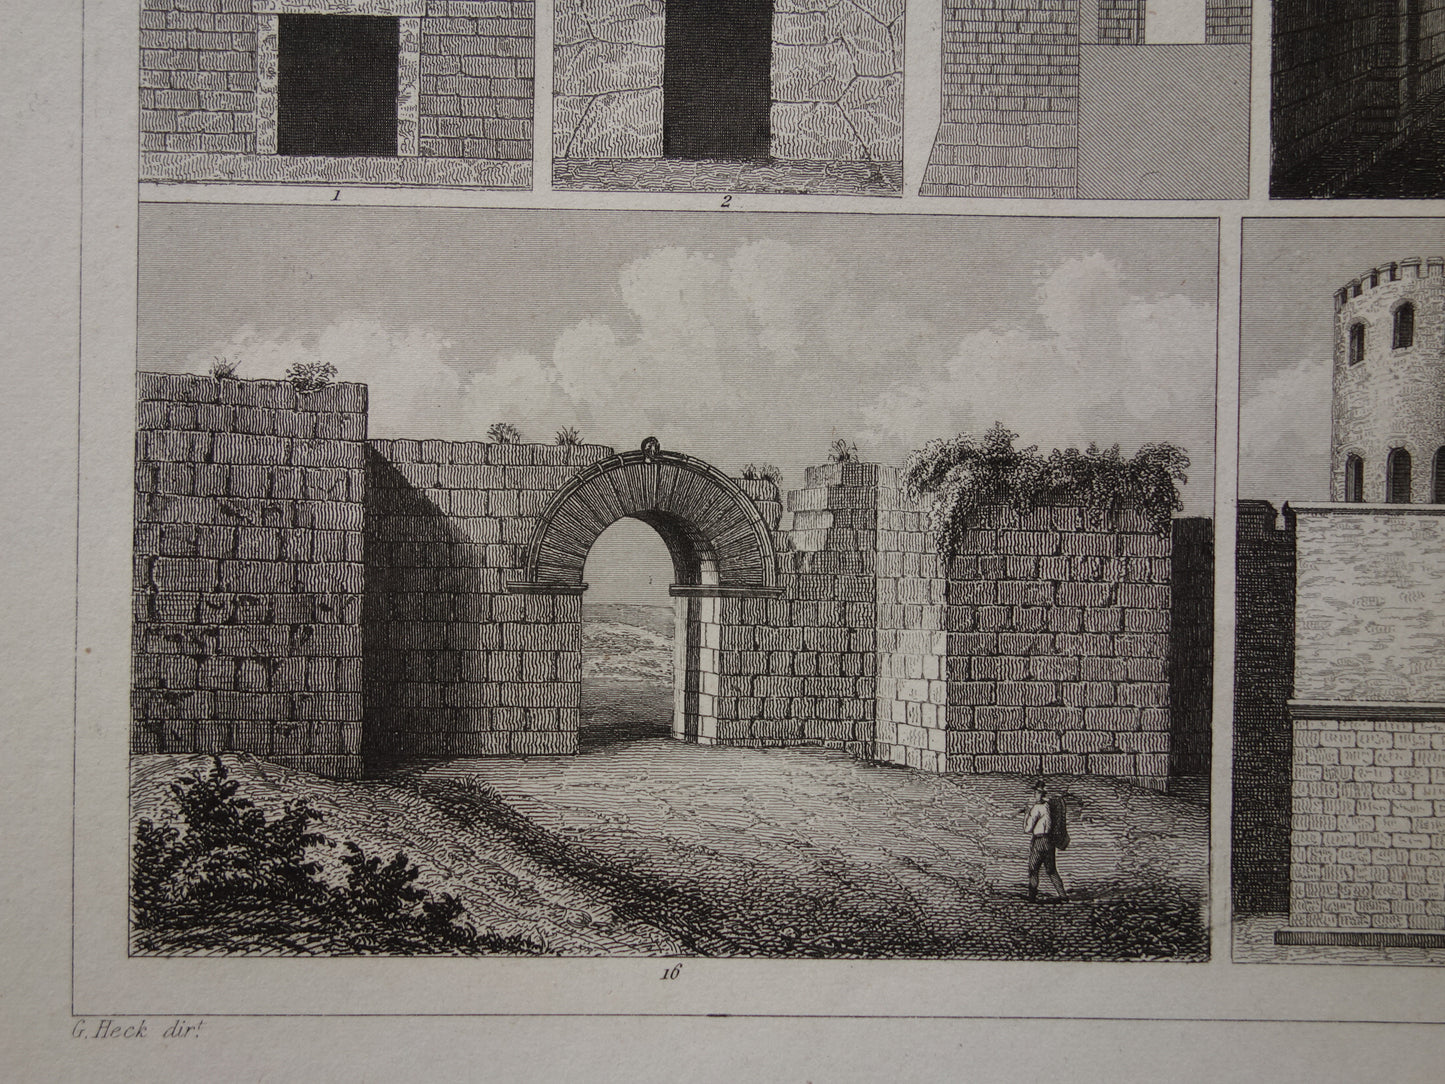 Oude prent van Grieks-Romeinse stadsmuur originele antieke illustratie uit 1849 Vestingwerken Rome Messene Byzantijnse muren vintage prints